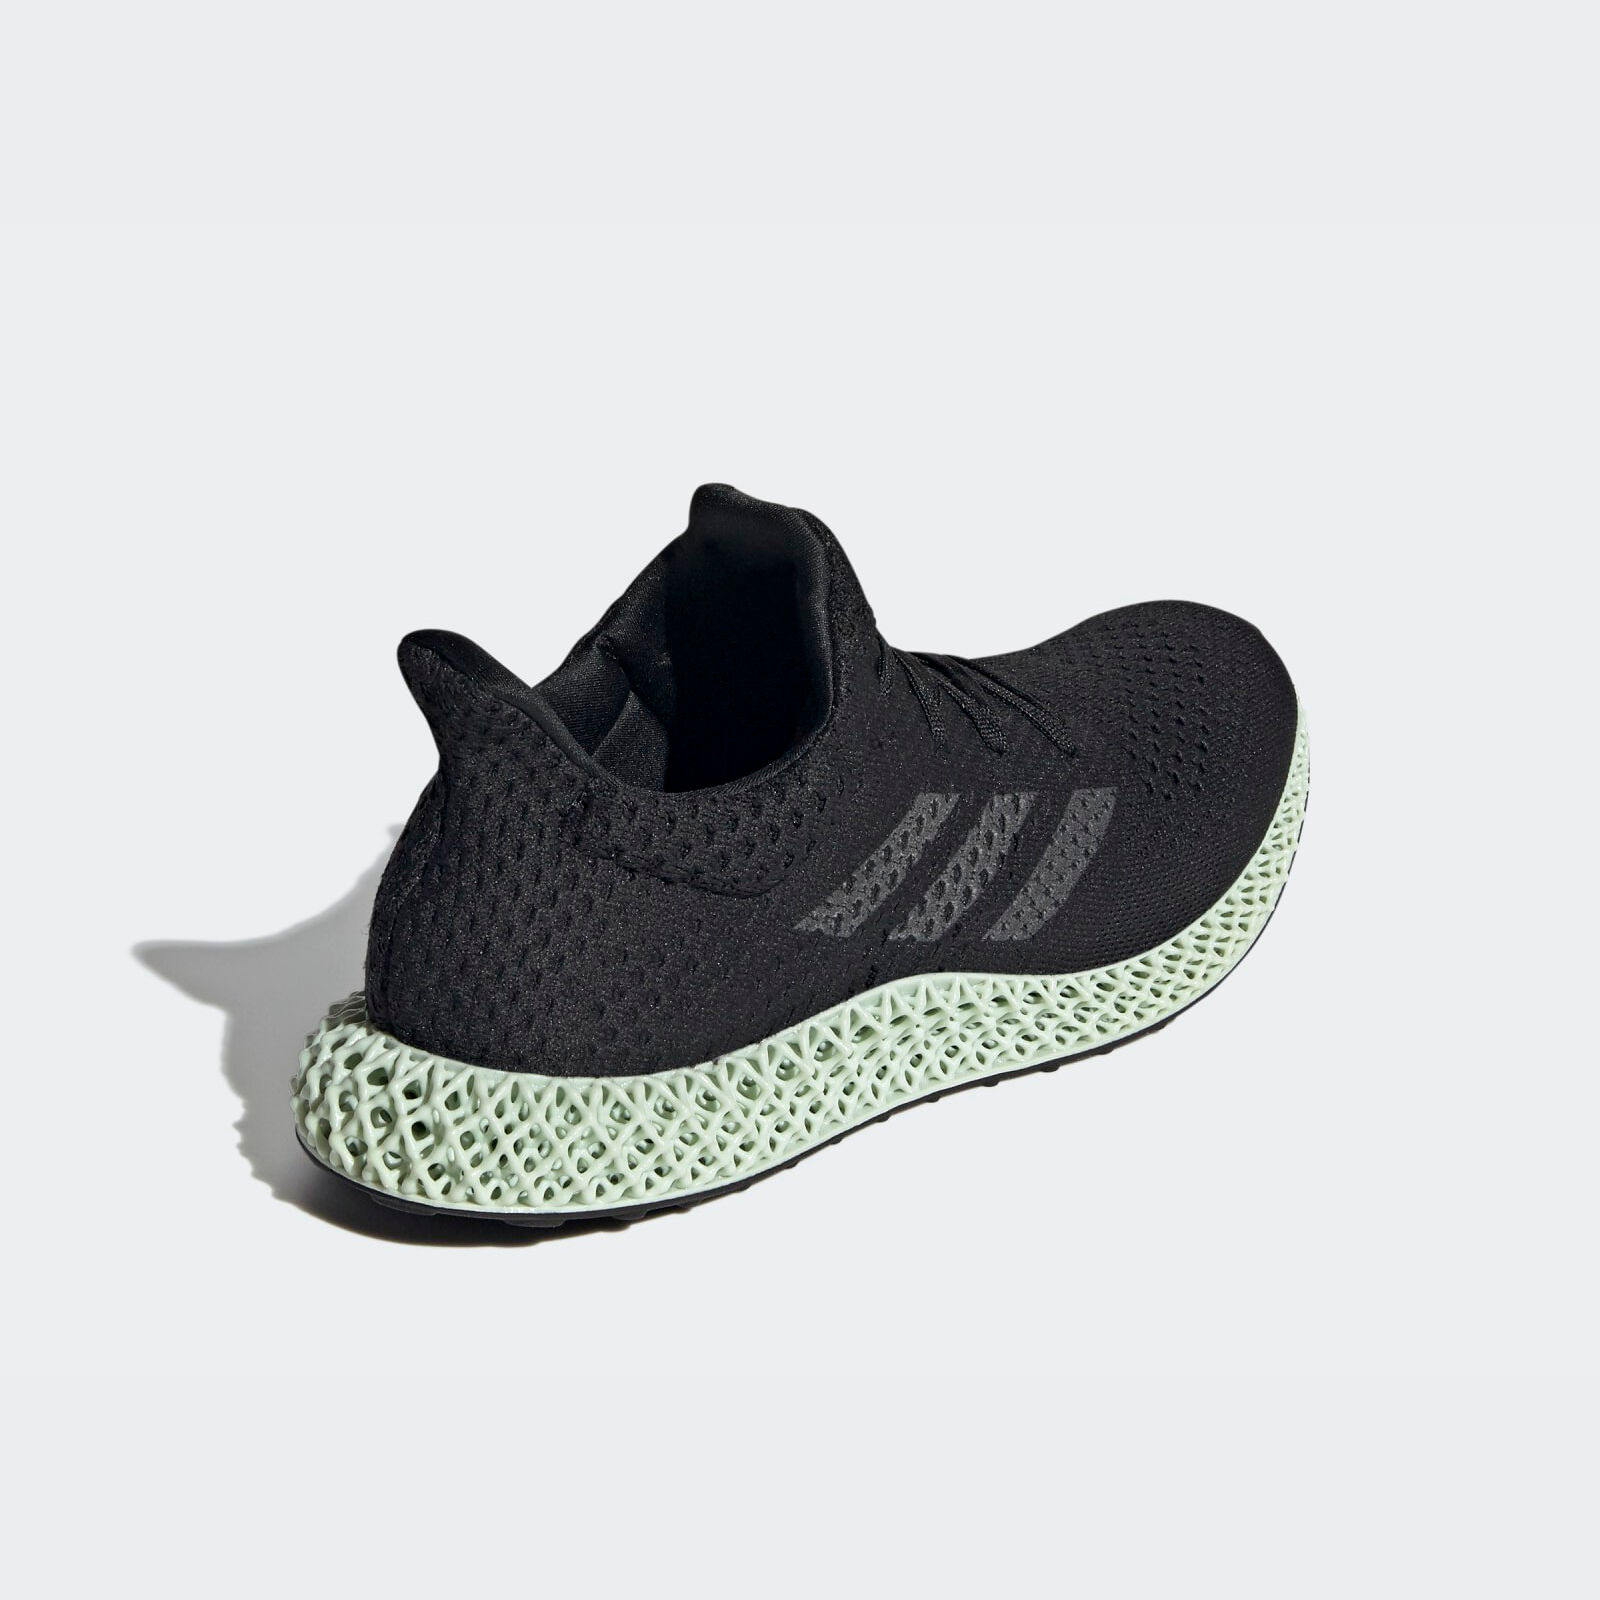 Adidas 4D Futurecraft
Black / Linen Green